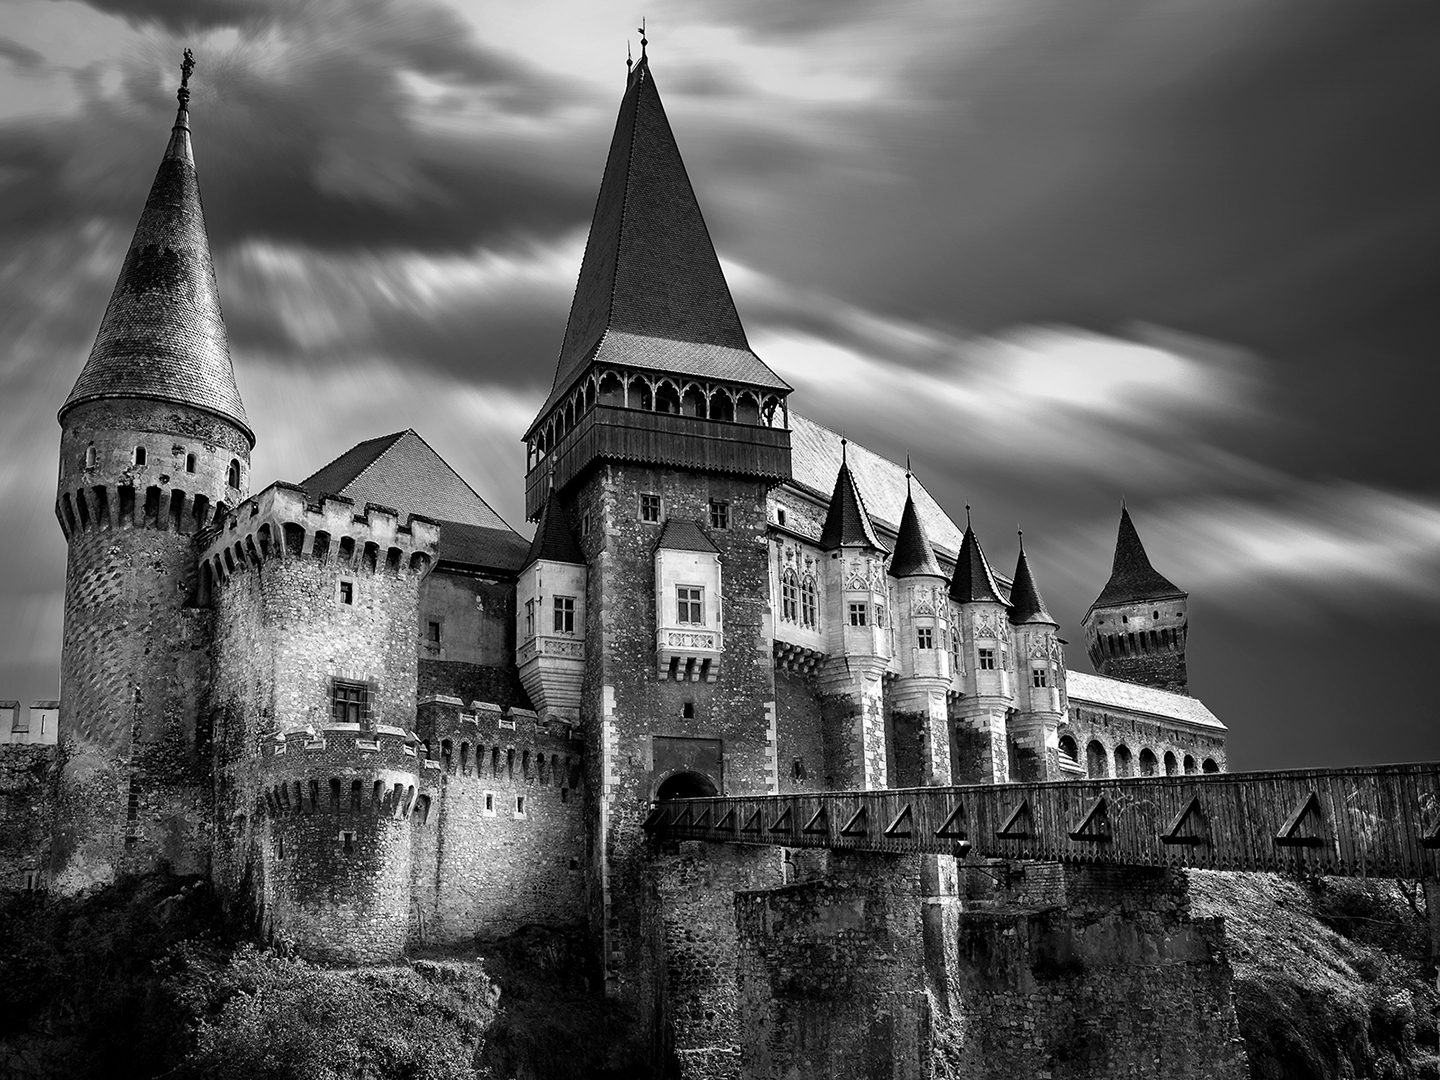 Corvin's Castle in Transylvania